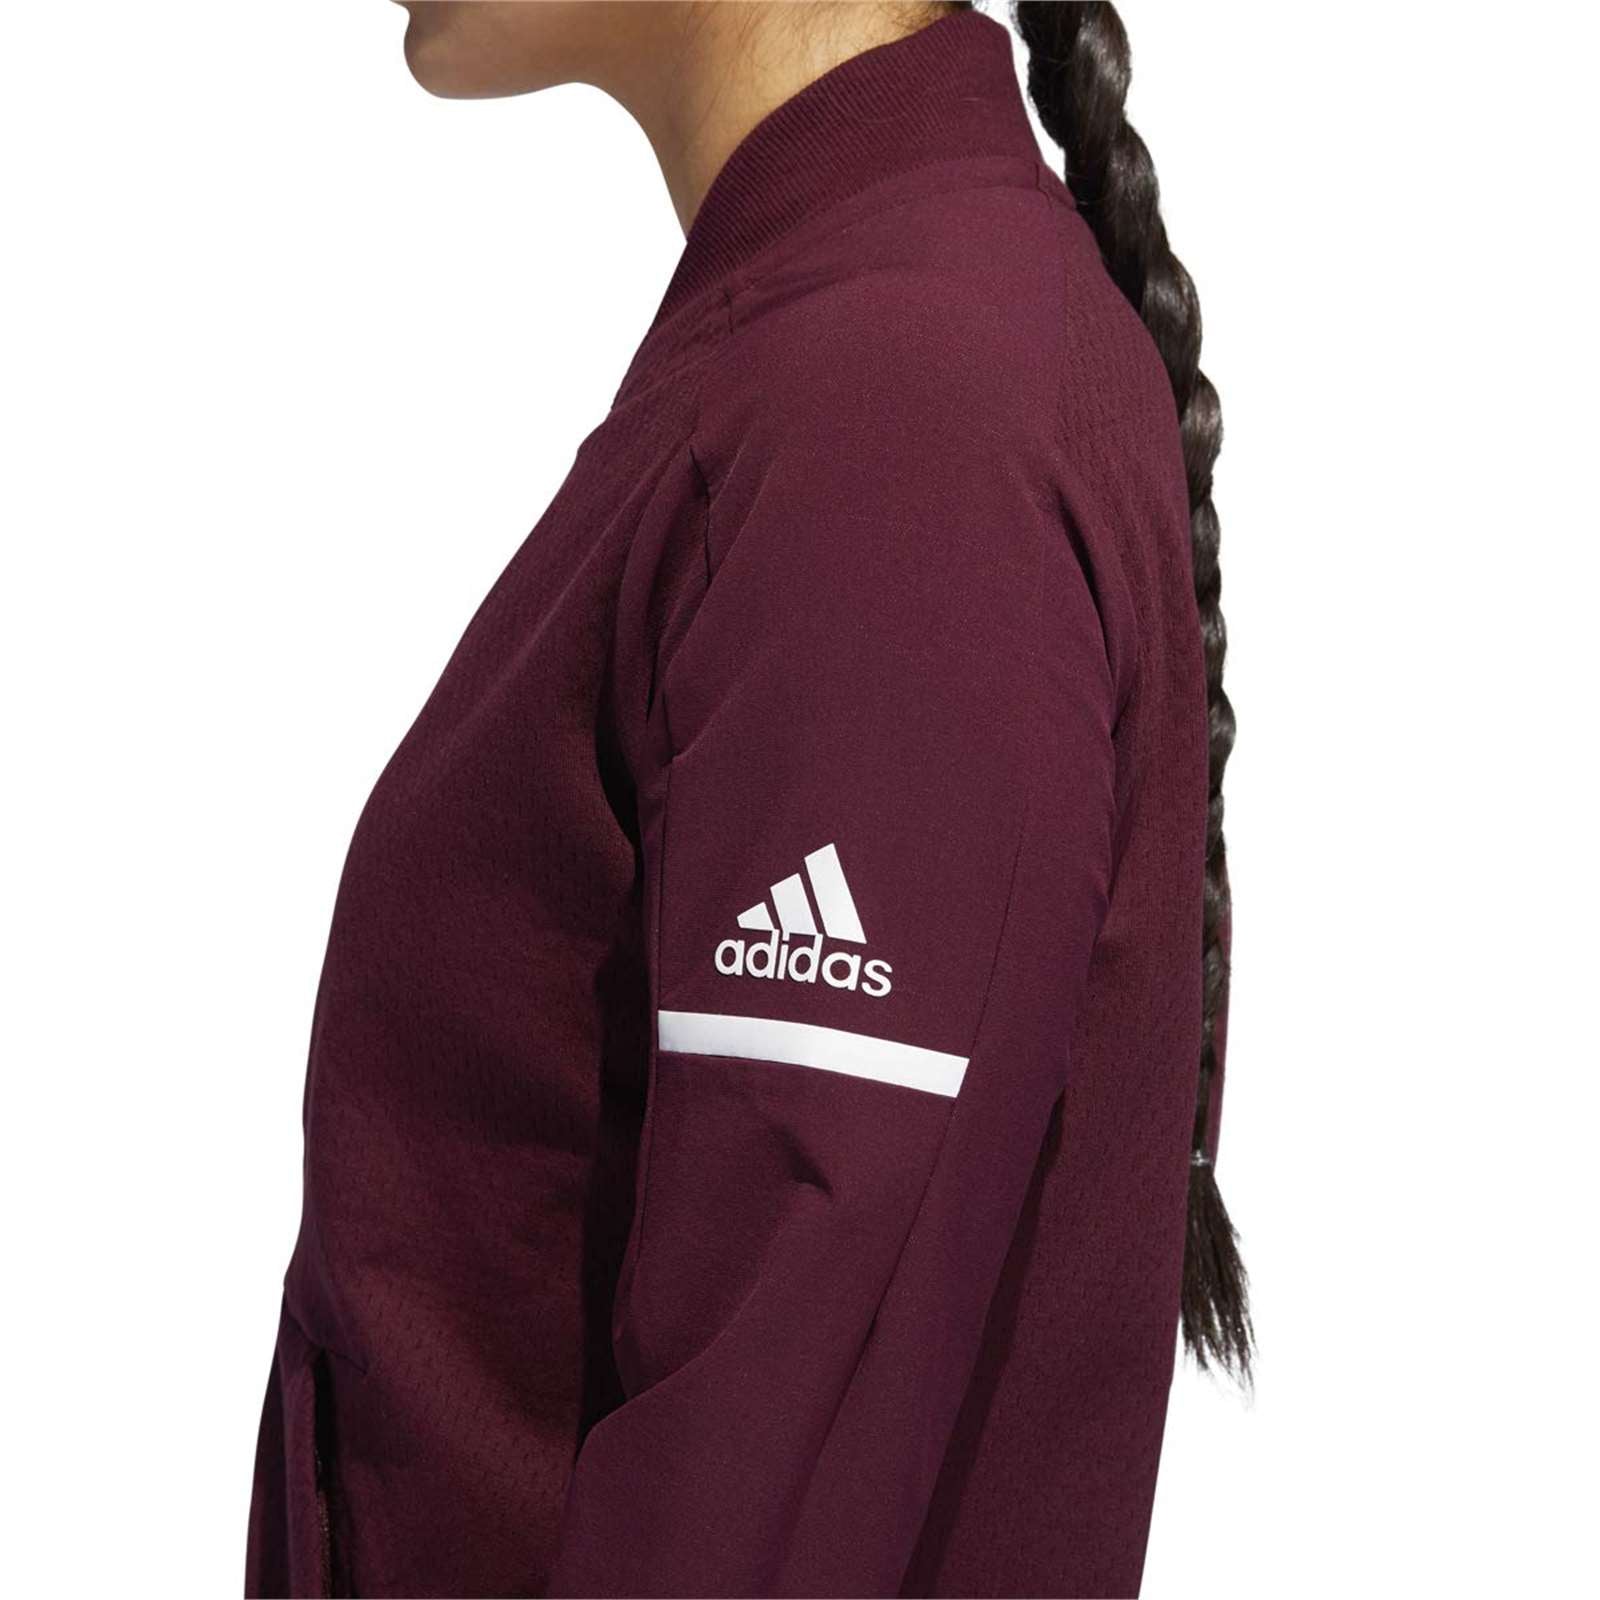 Adidas Women Squad Bomber Jacket